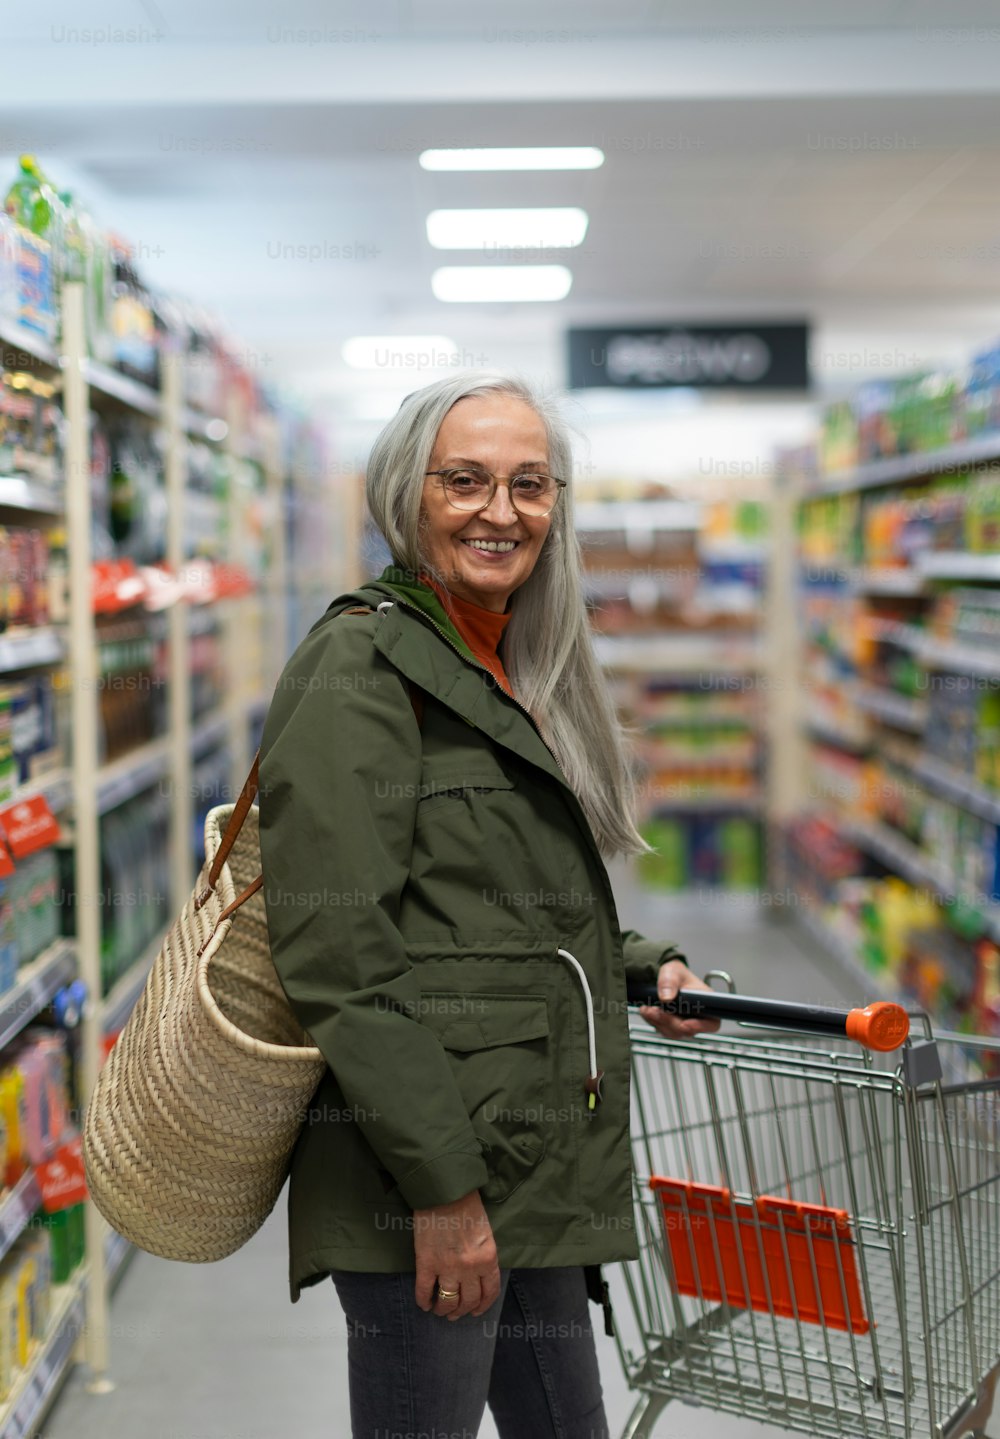 Una donna anziana in piedi e shopping nel supermercato.